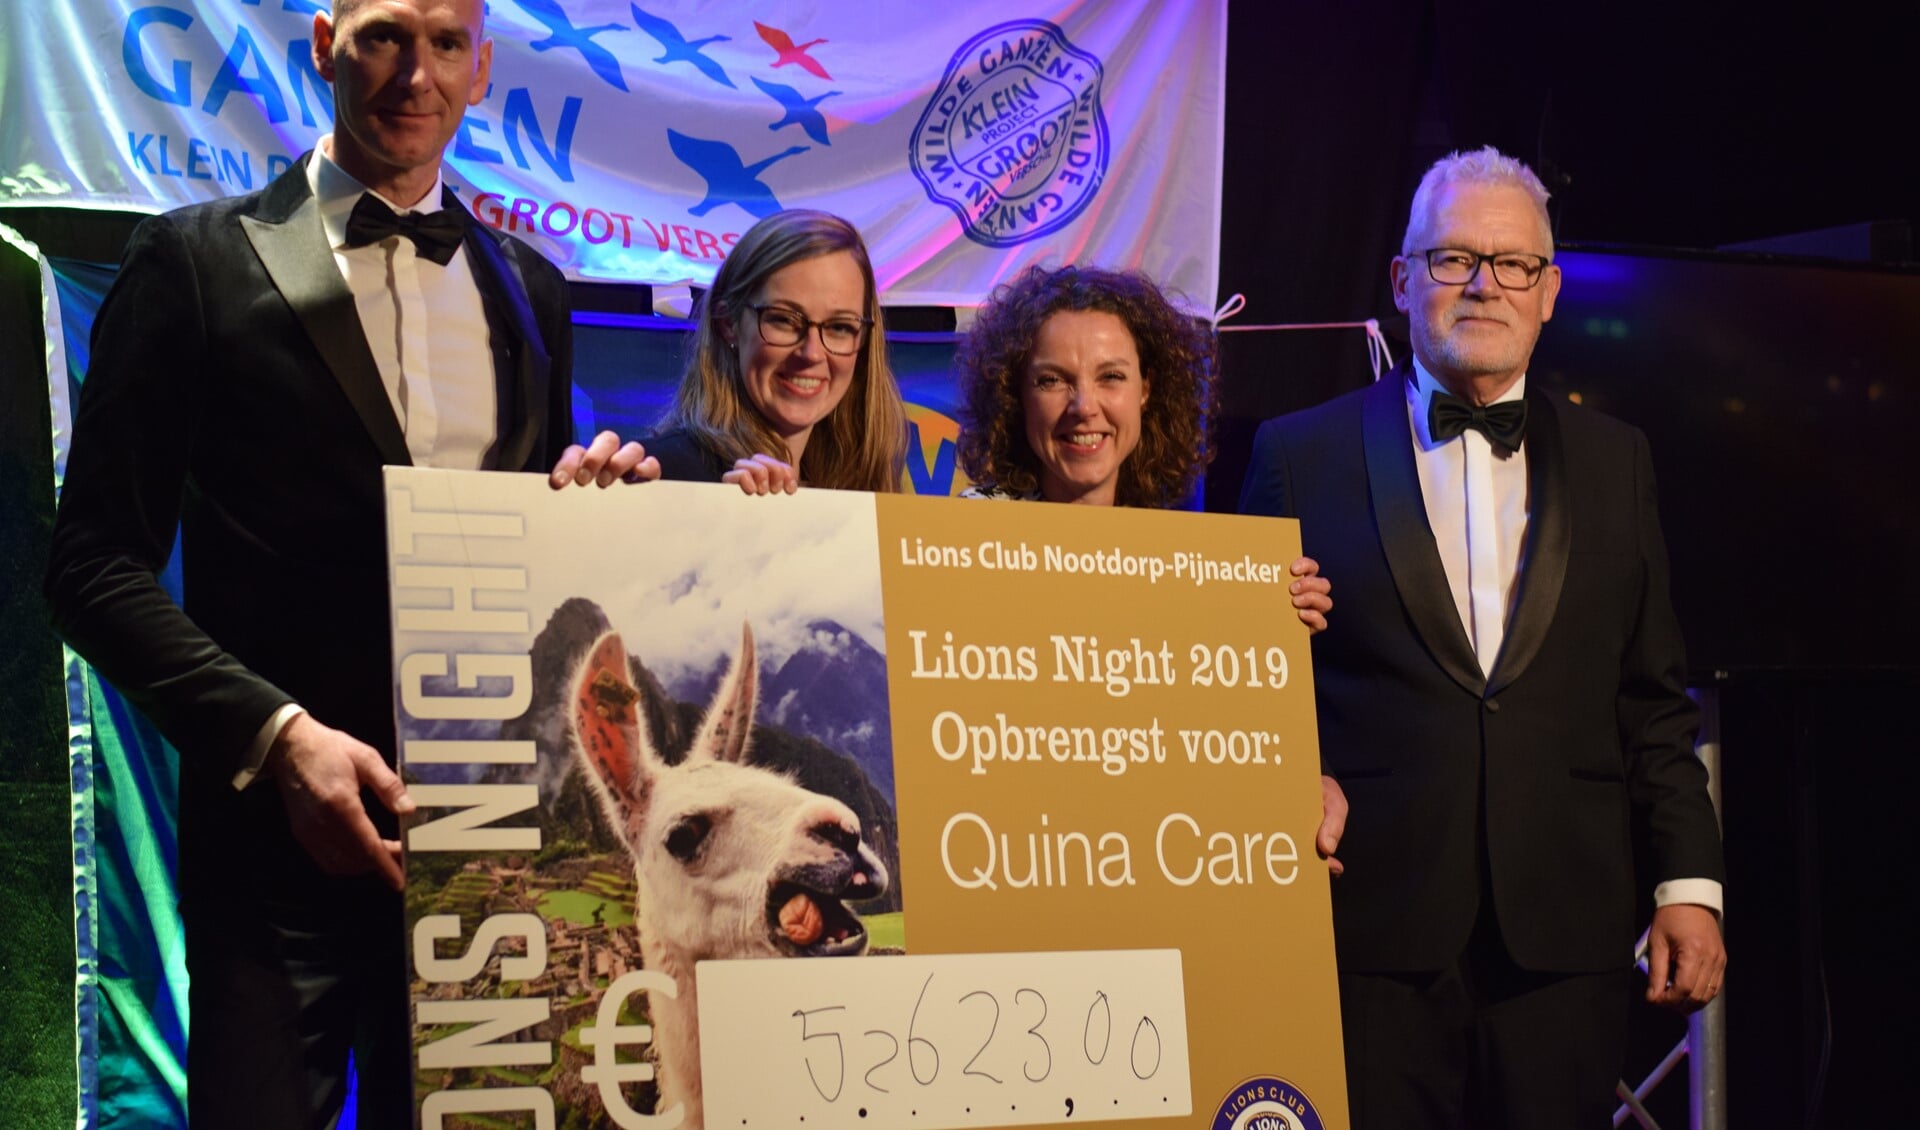 Bestuursleden Yvonne van der Ende en Mariska van de Sande van stichting Quina Care ontvangen een reusachtige cheque van Lions Spreekstalmeester René van Eijk (links) en President Luuk van den Eijk (rechts).  